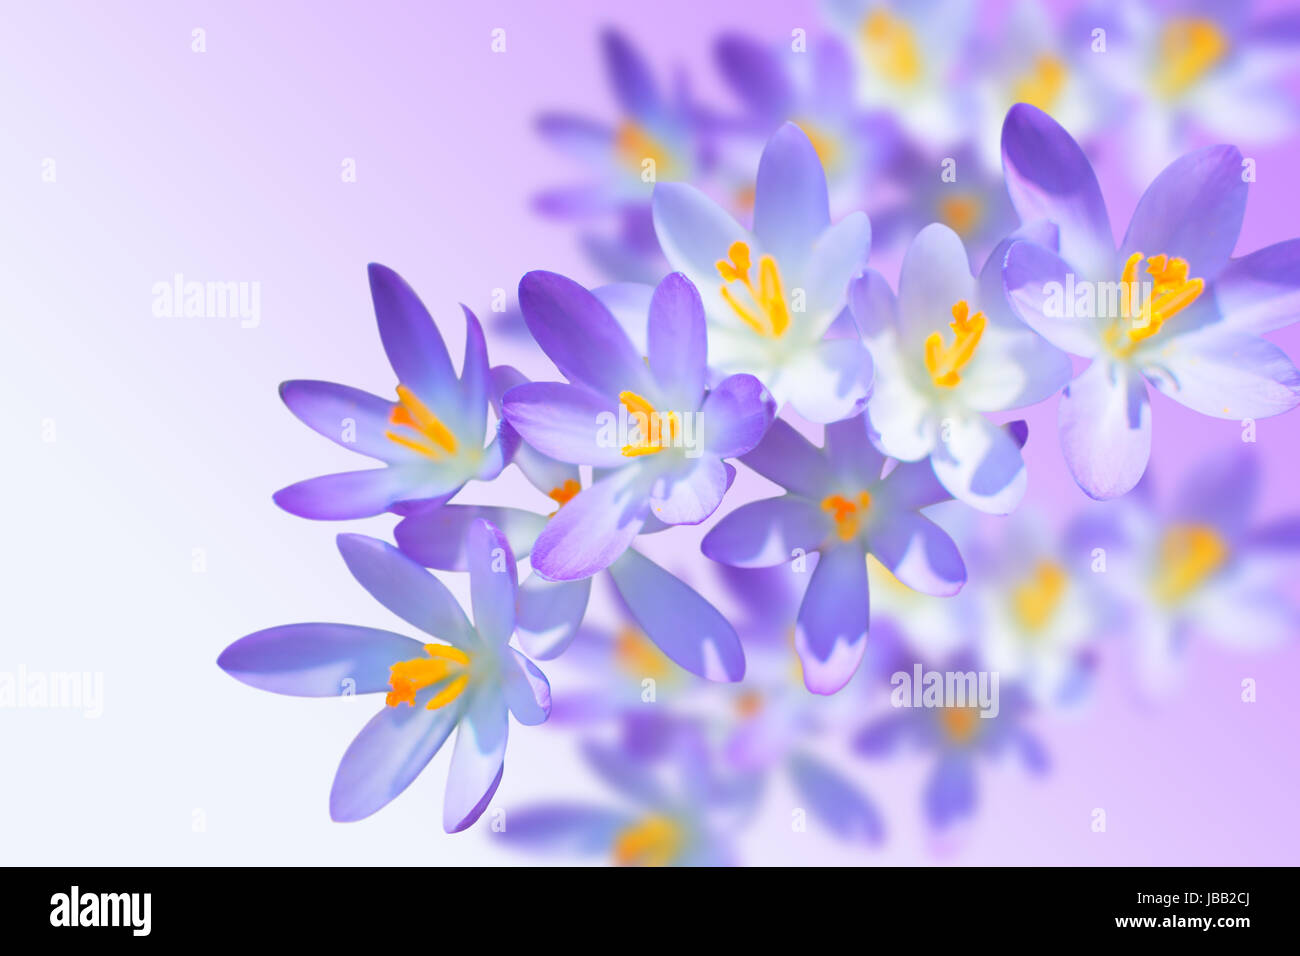 Alpine Krokusse Zarte Fruhlingsblumen Auf Unscharfen Hintergrund Mit Kostenlosen Textfreiraum Platz Fur Ihren Text Stockfotografie Alamy